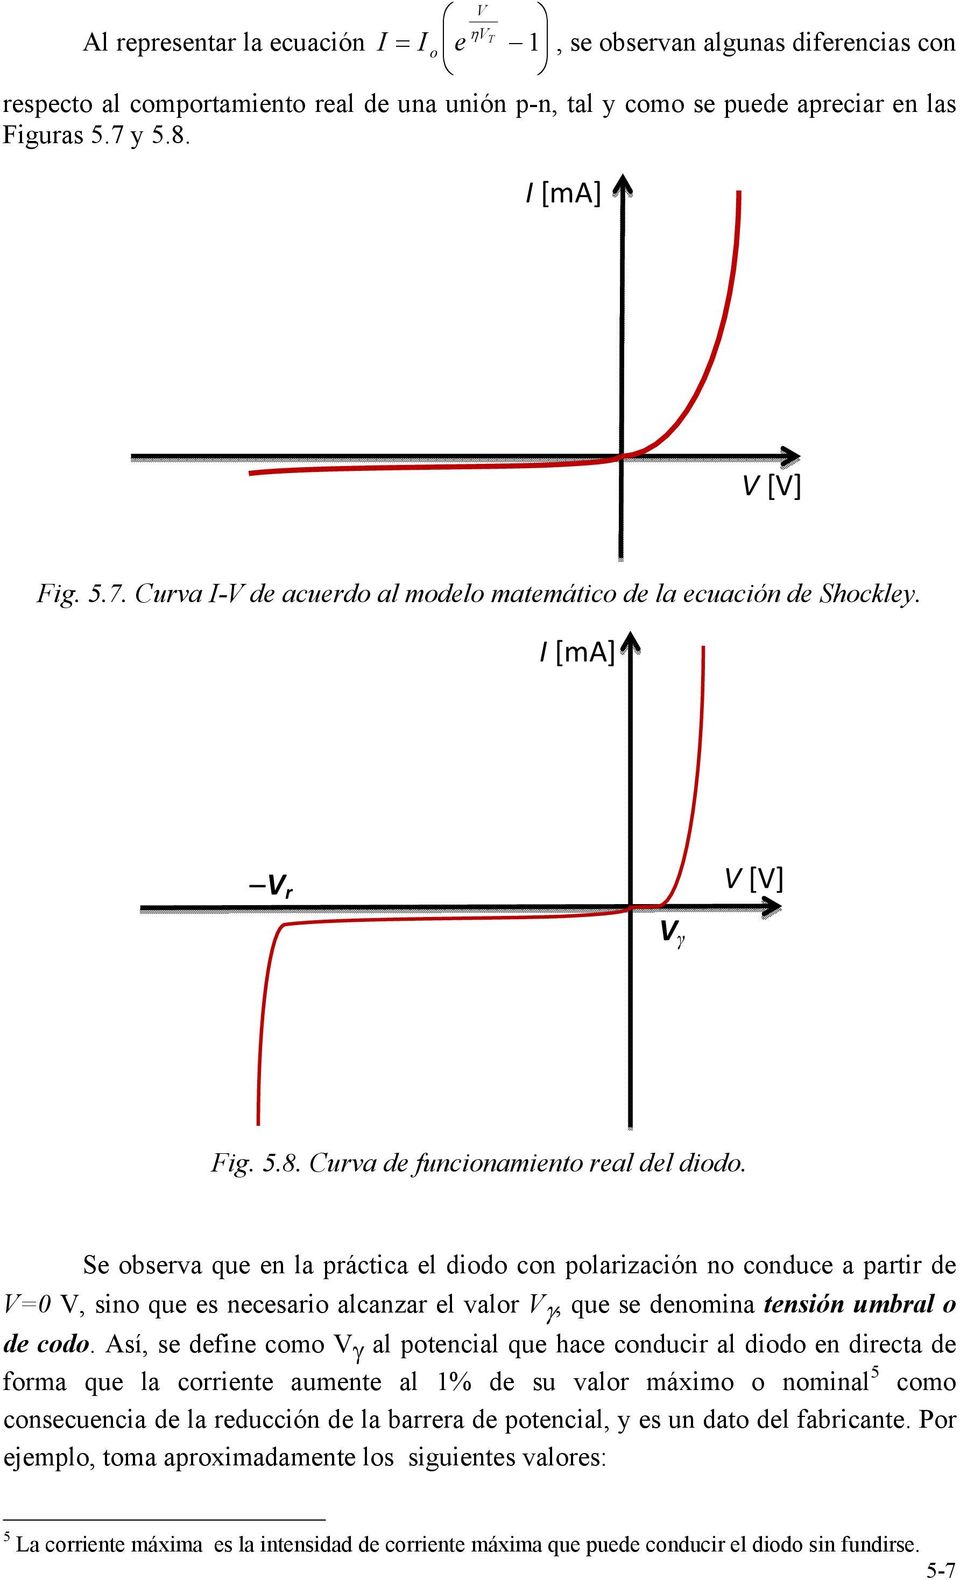 Se observa que en la práctica el diodo con polarización no conduce a partir de =0, sino que es necesario alcanzar el valor, que se denoina tensión ubral o de codo.